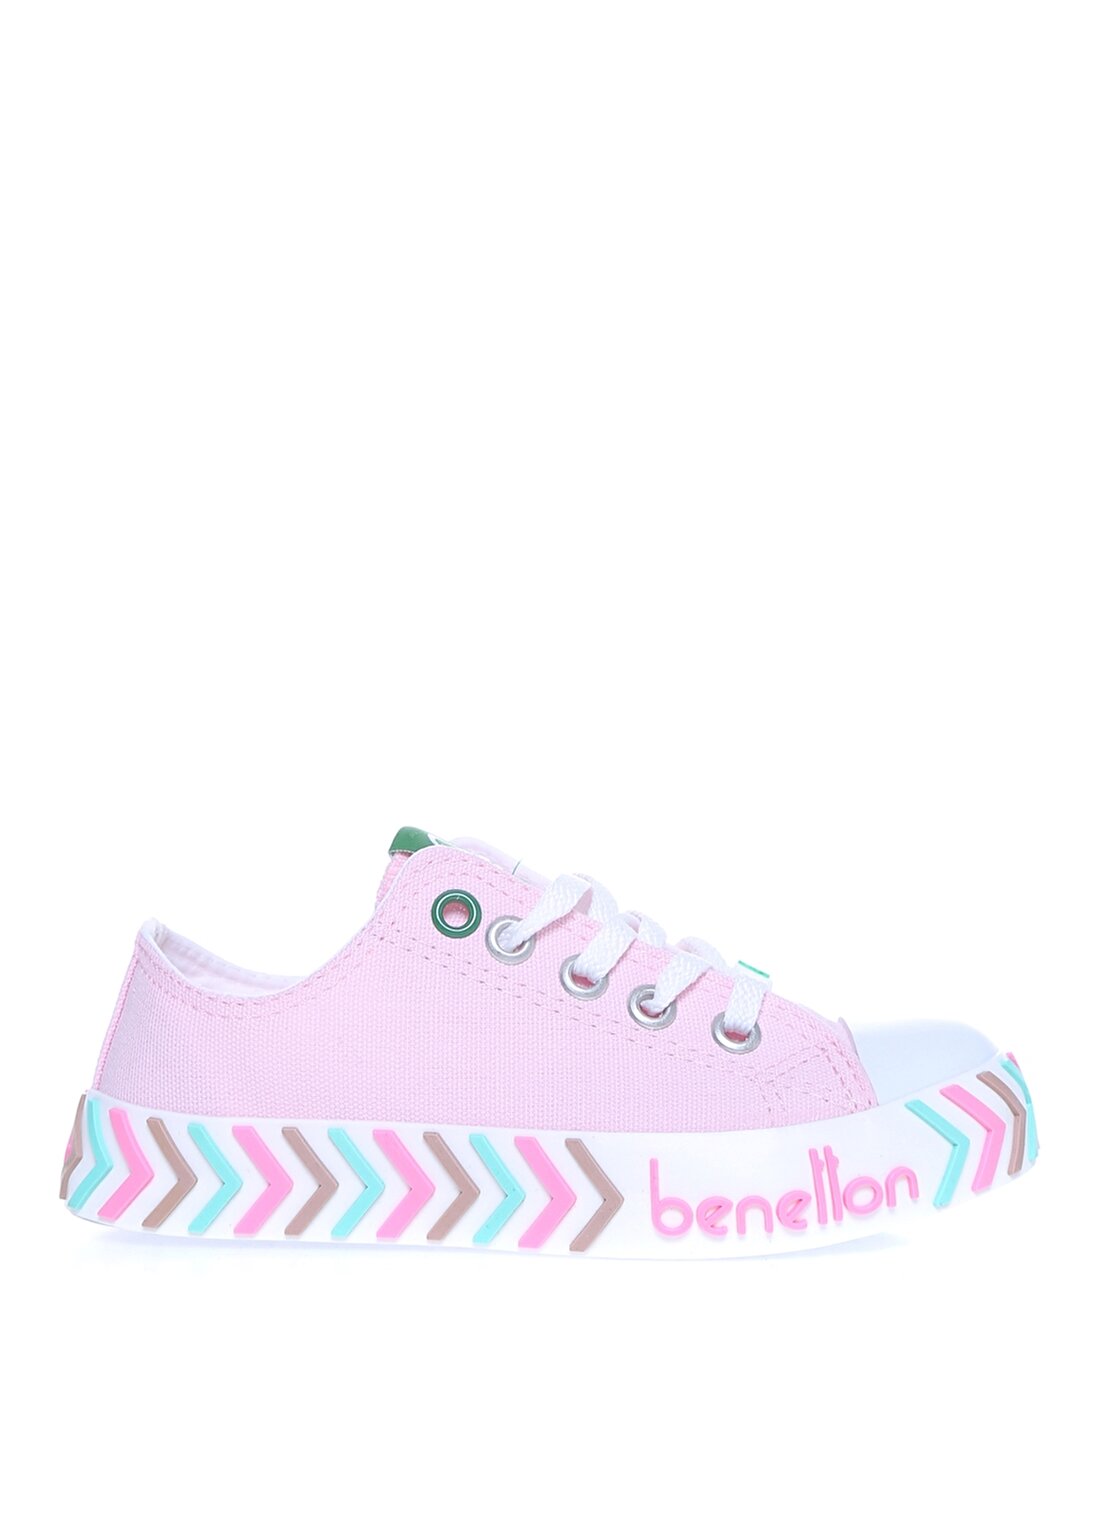 Benetton Pembe Kız Çocuk Yürüyüş Ayakkabısı BN-30635 433-Pembe